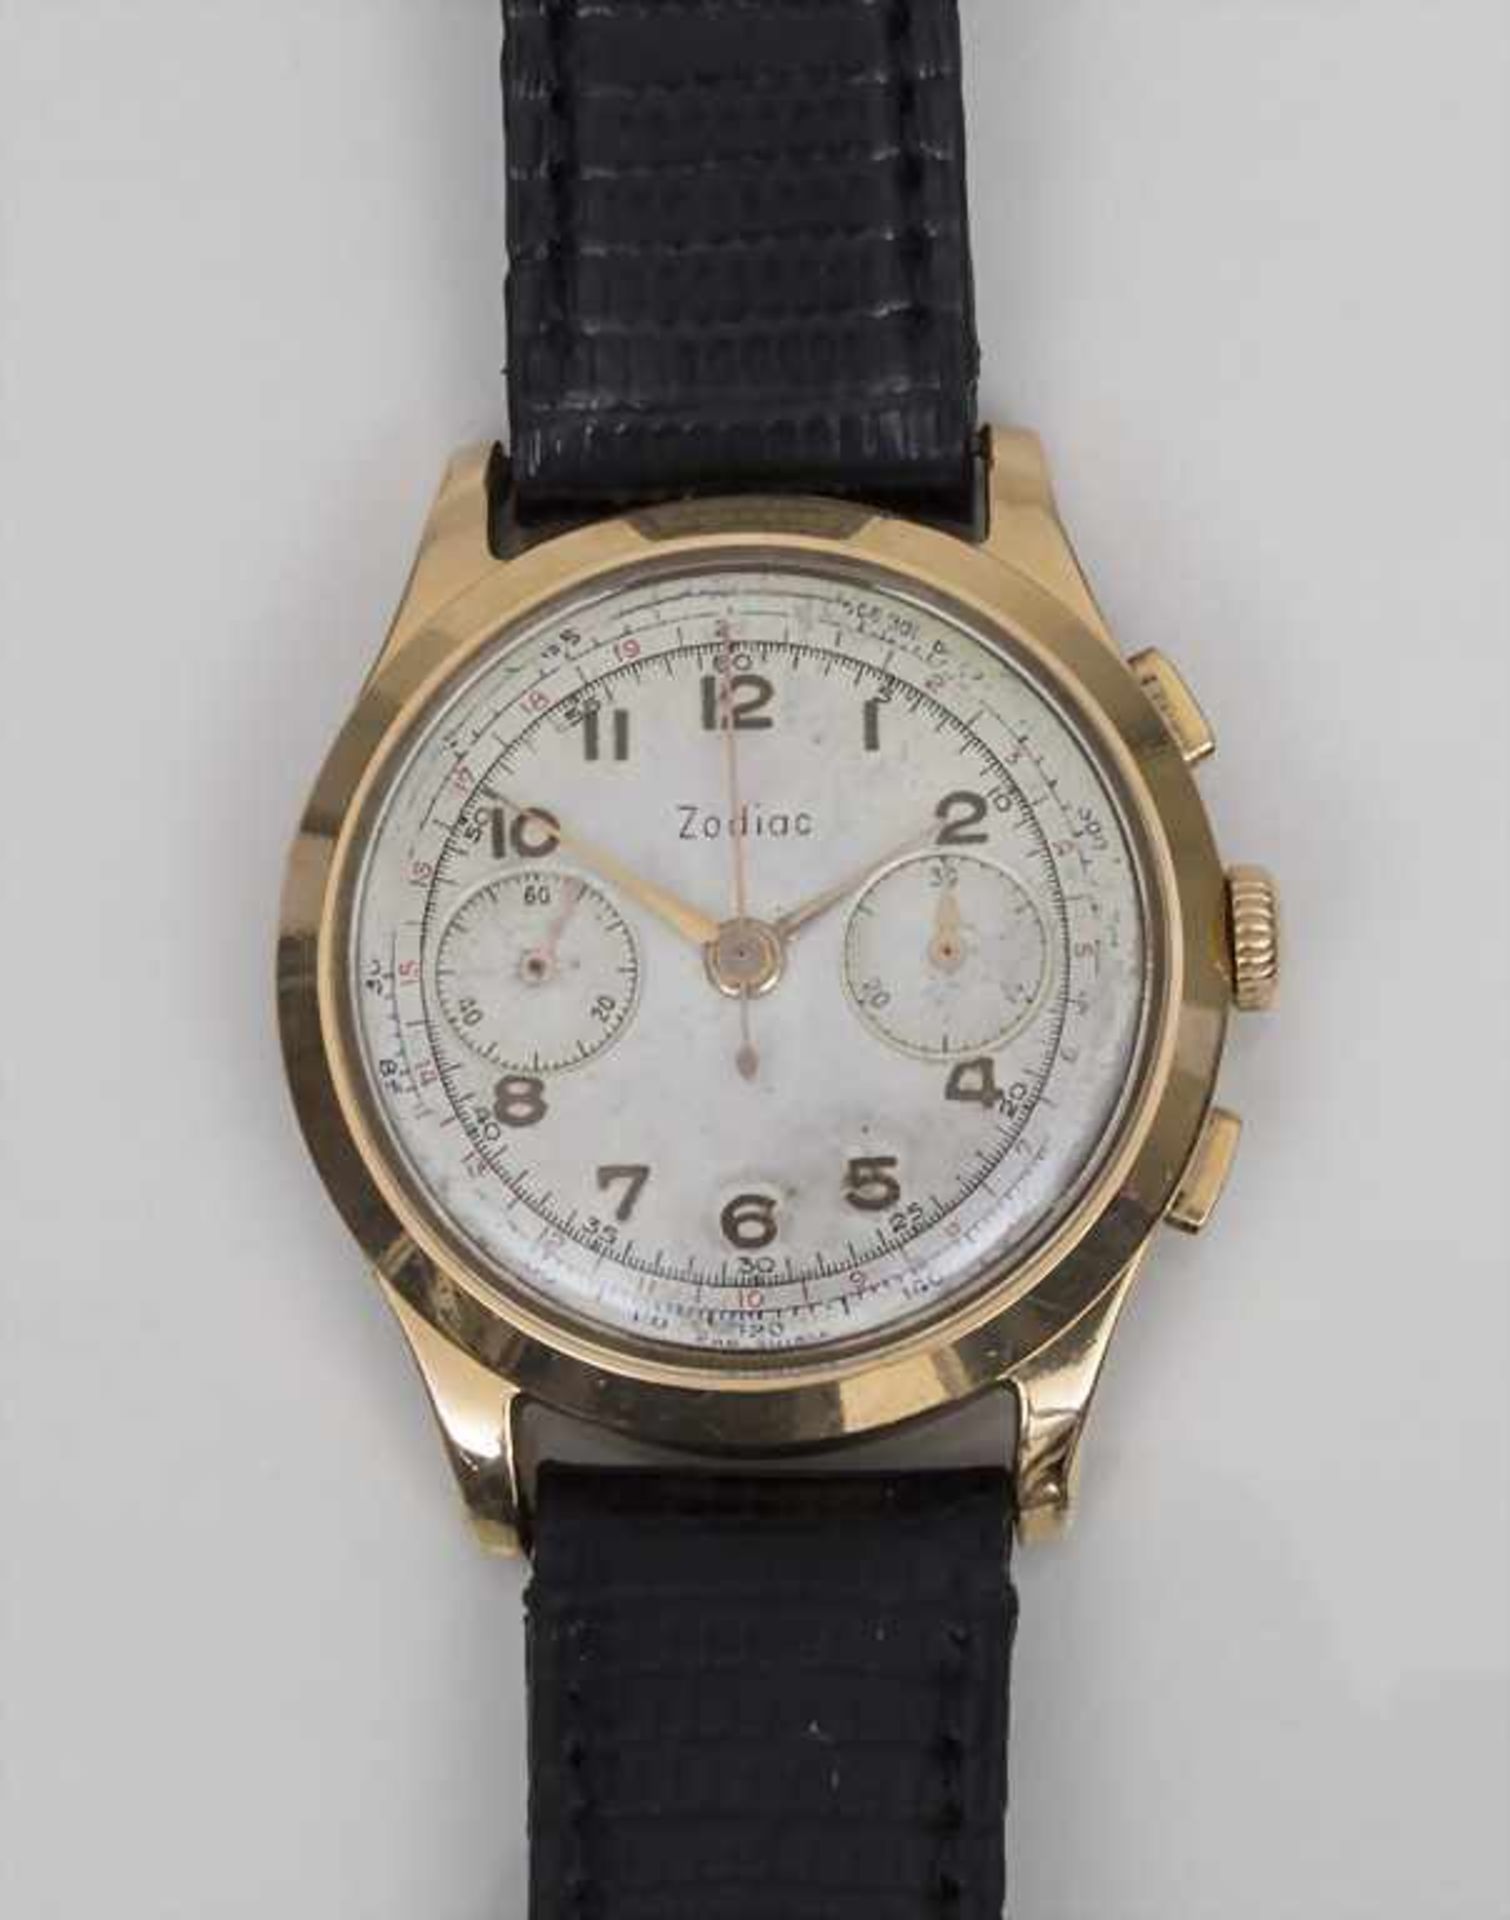 HAU Zodiac, Chronograph, Schweiz/Swiss, um 1950 Gehäuse: Gold 18 Kt 750/000 gepunzt,Werk: